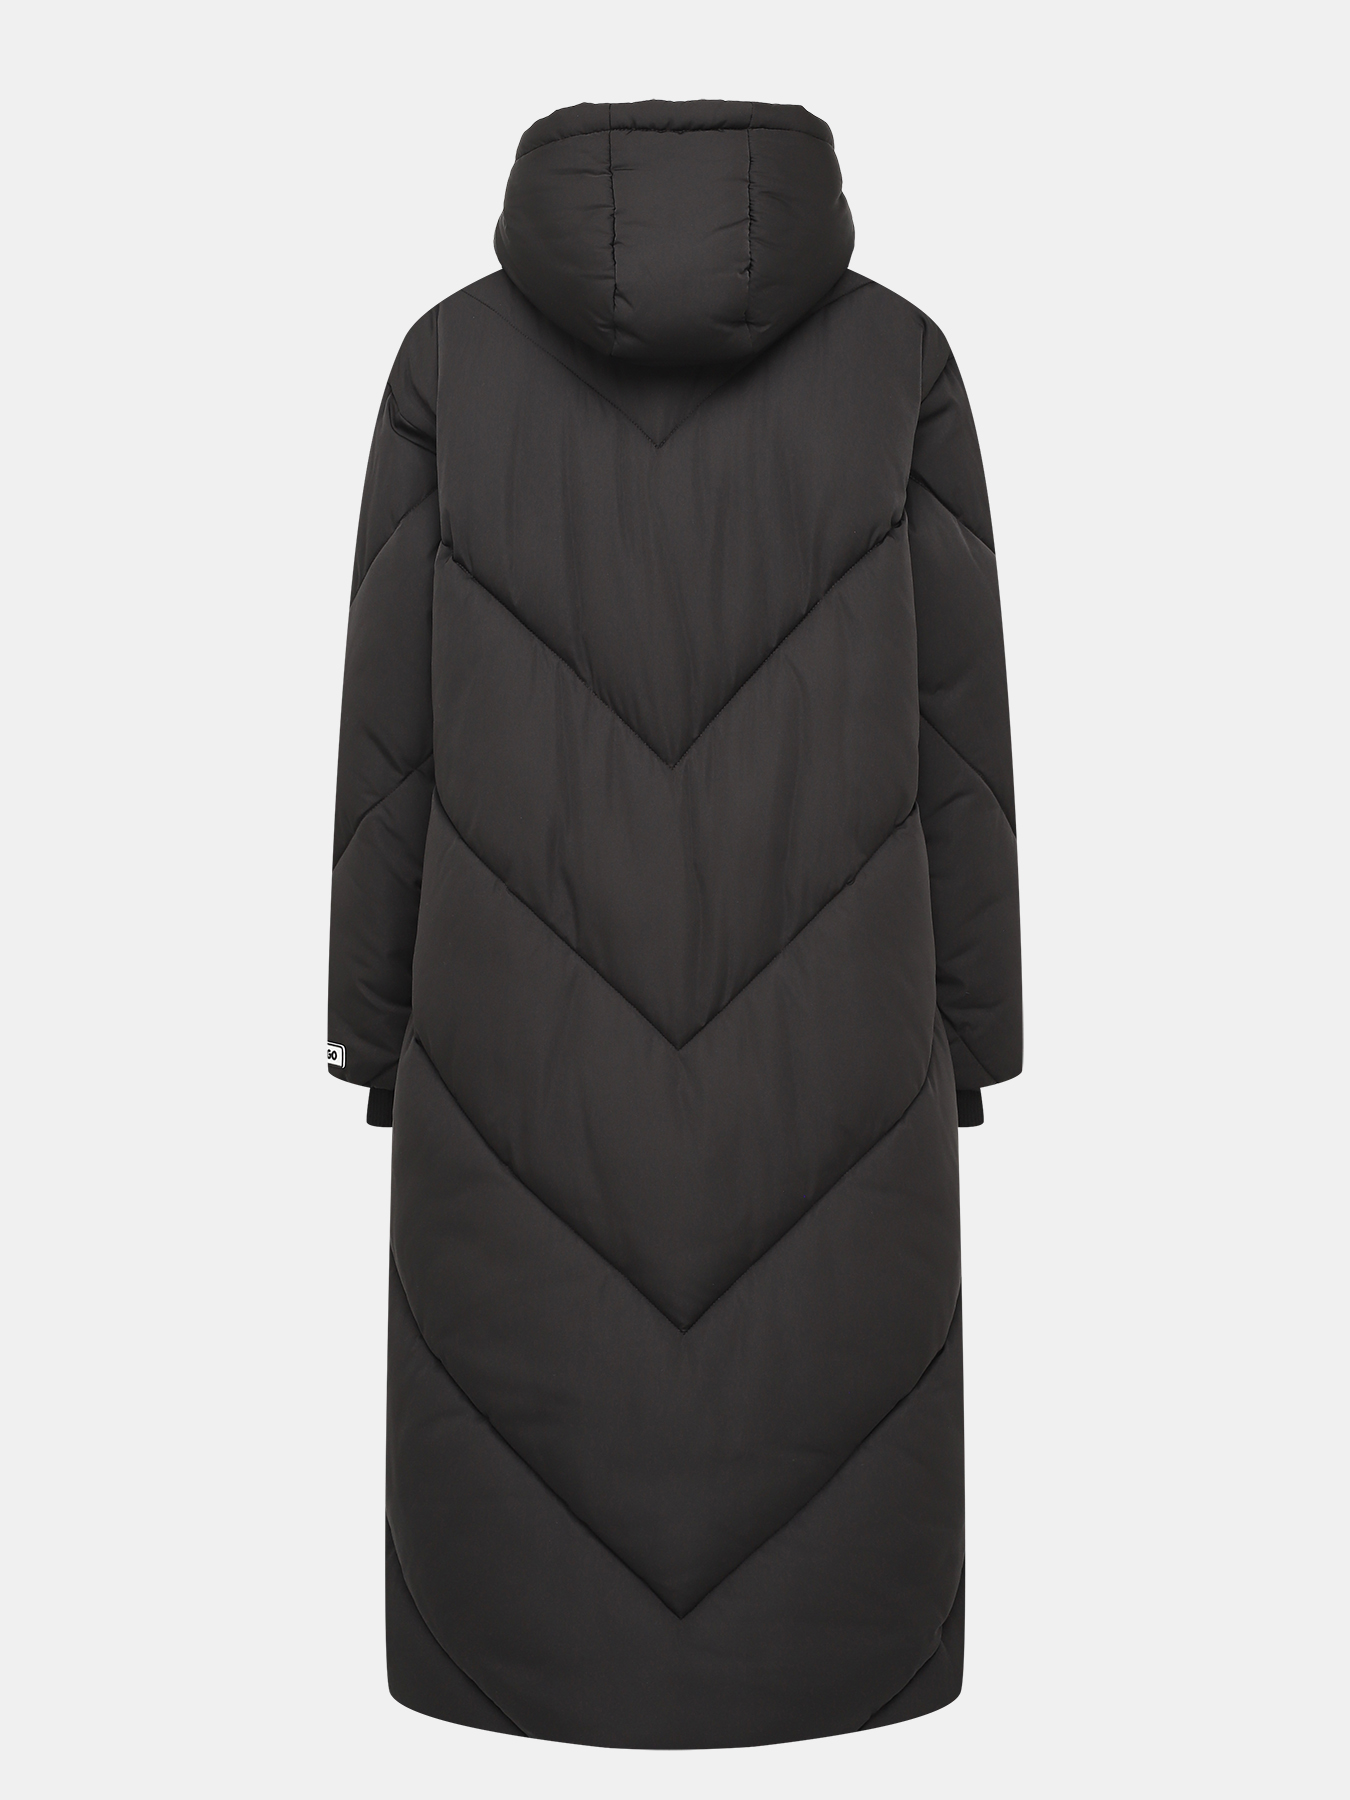 Пальто осеннее Favella HUGO 427453-043, цвет черный, размер 44-46 - фото 2